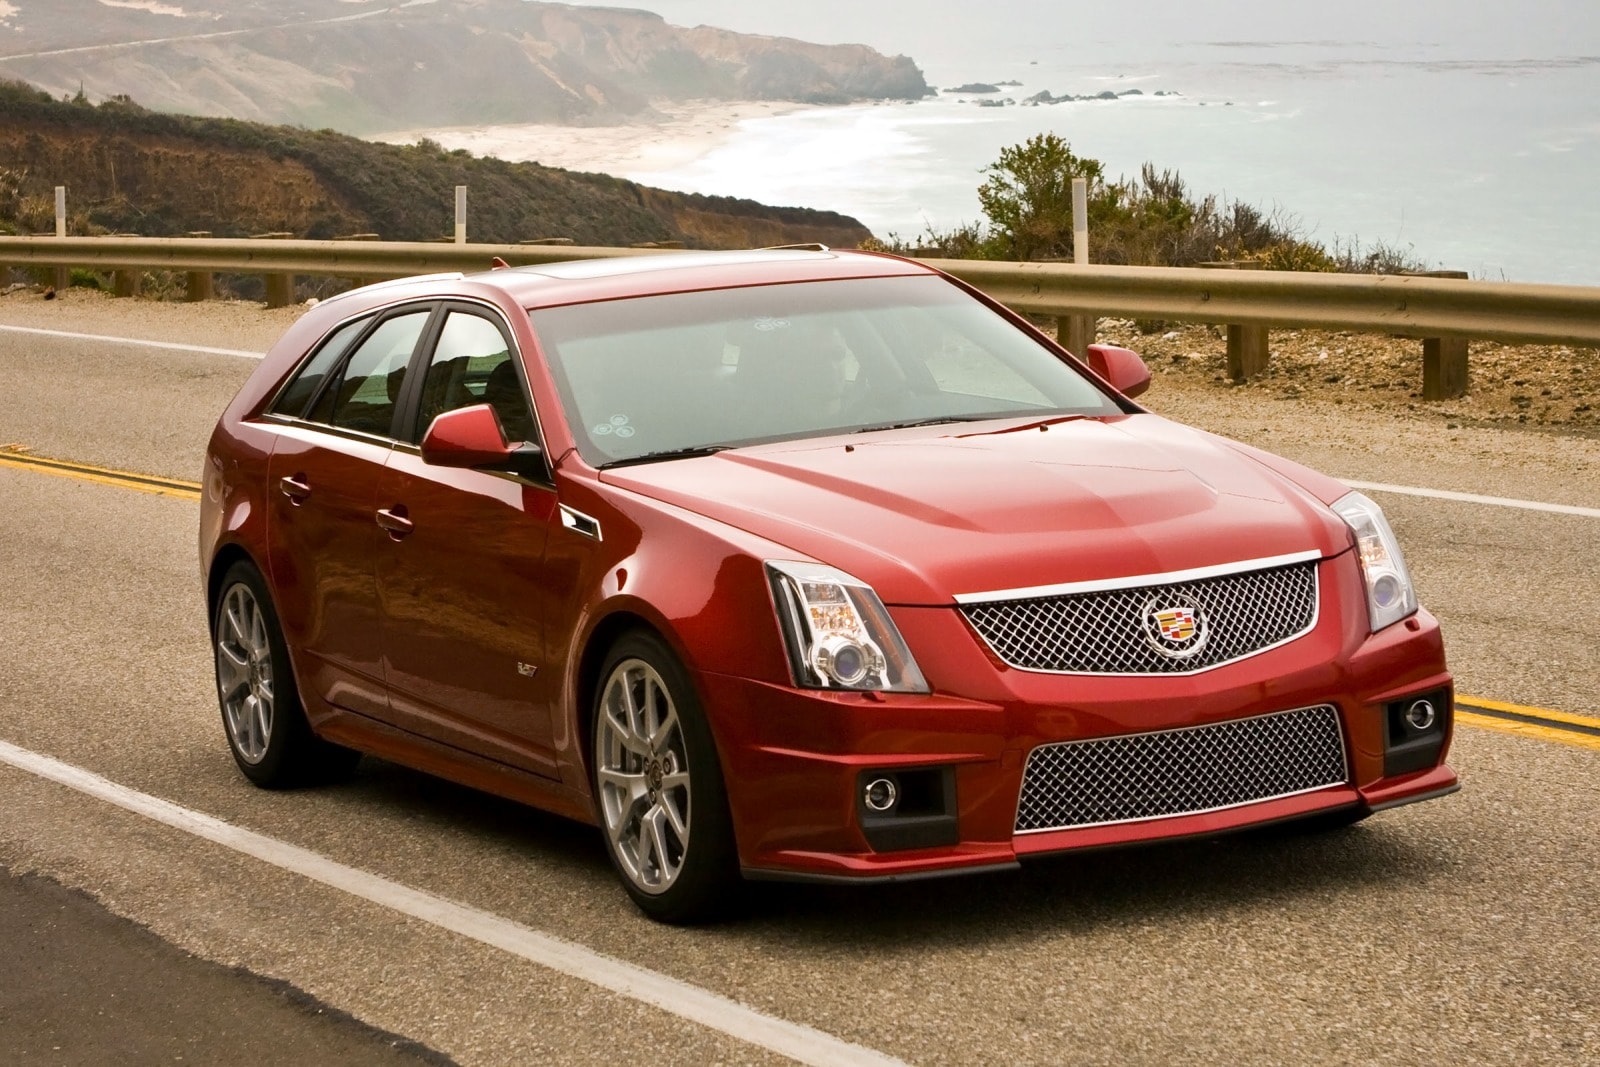 2012 Cadillac CTS-V Wagon Review & Ratings | Edmunds